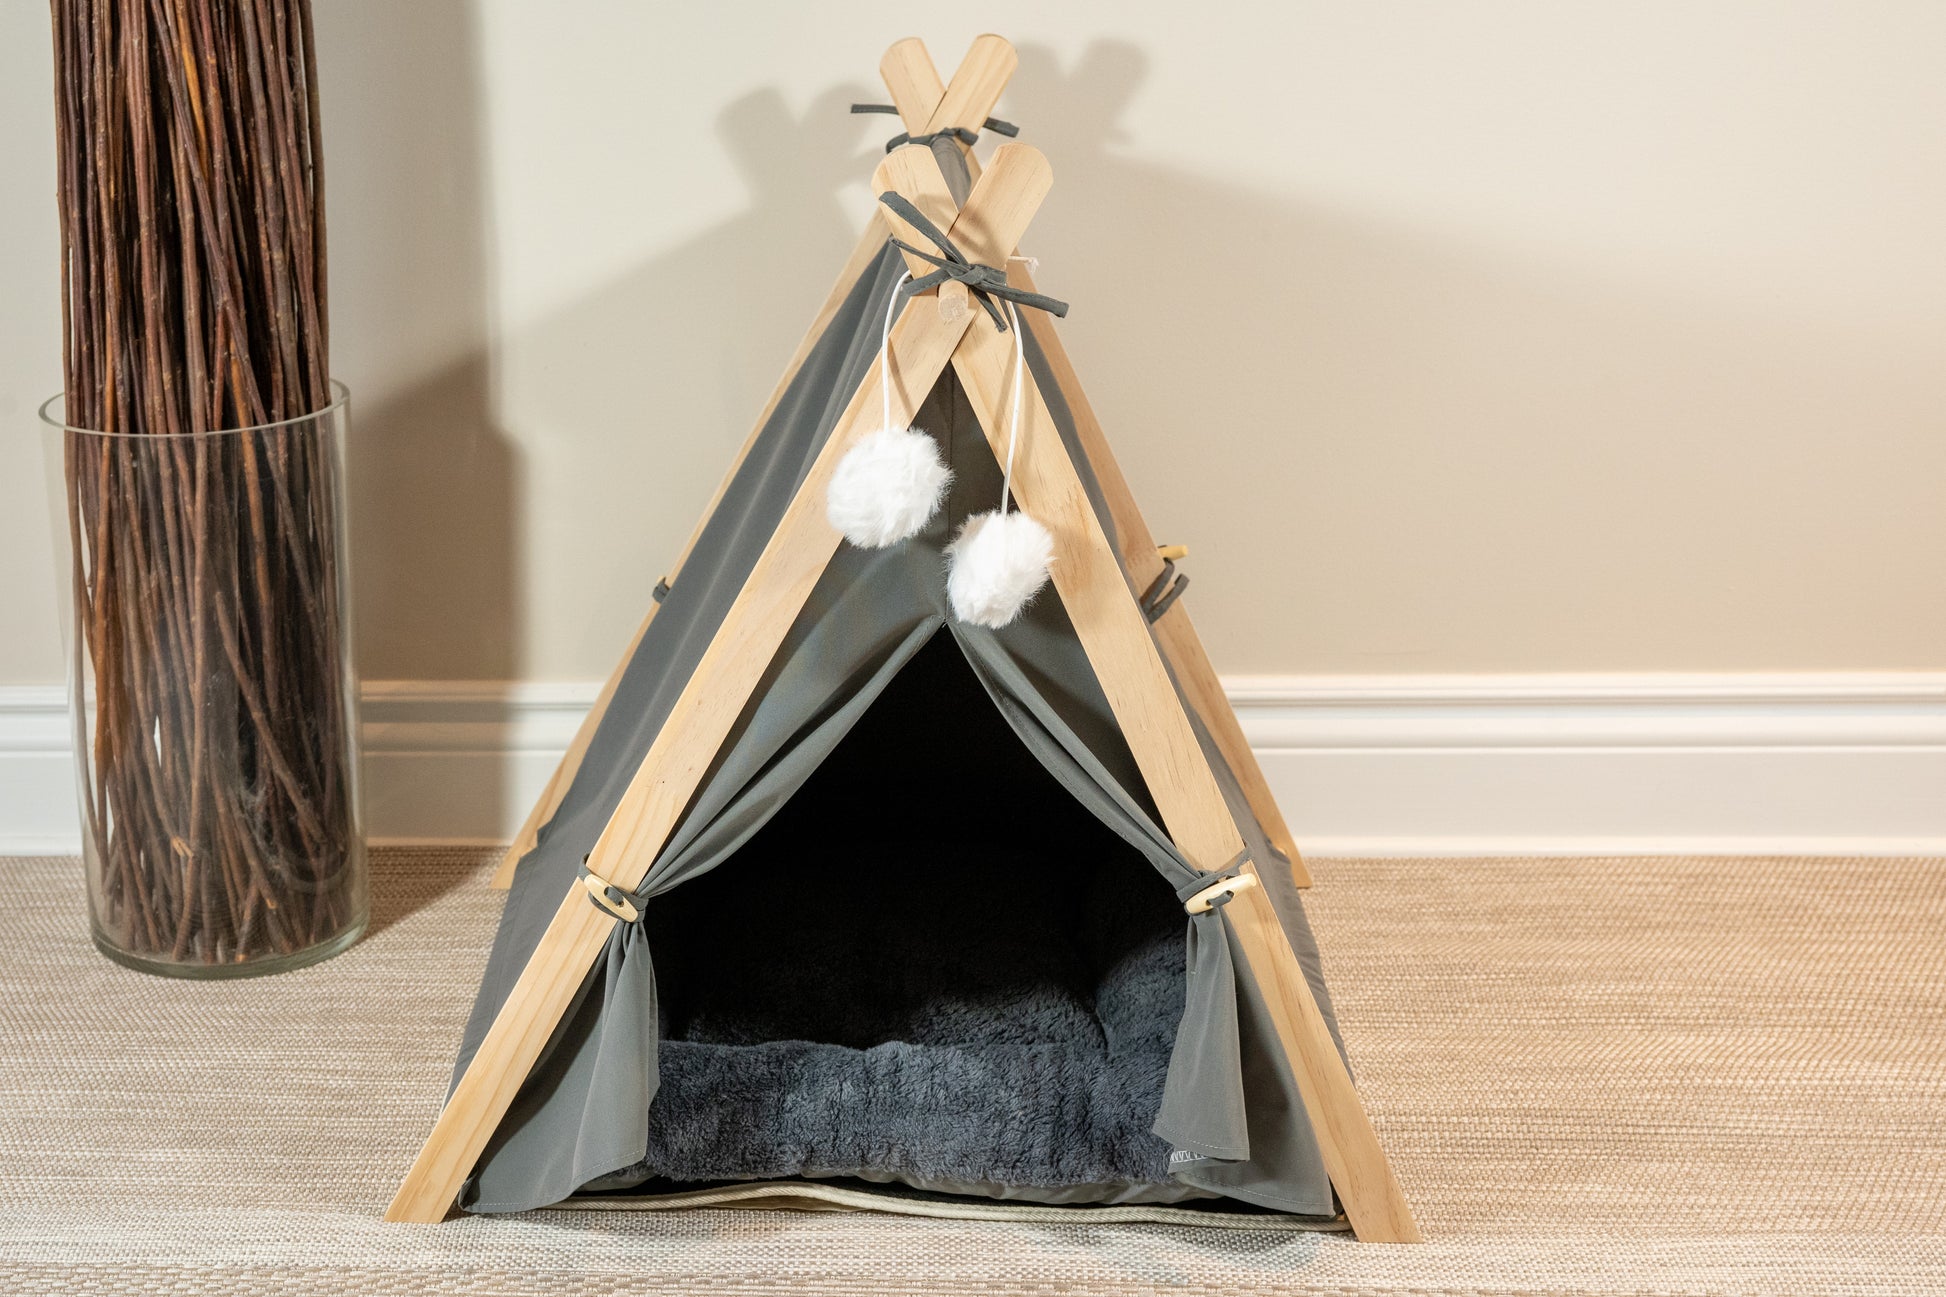 Dark grey pet tent for dogs, cats and rabbits with cozy cushion and soft pom poms. | Tente grise foncée pour chiens, chats et lapins avec coussin douillet et pompons doux.